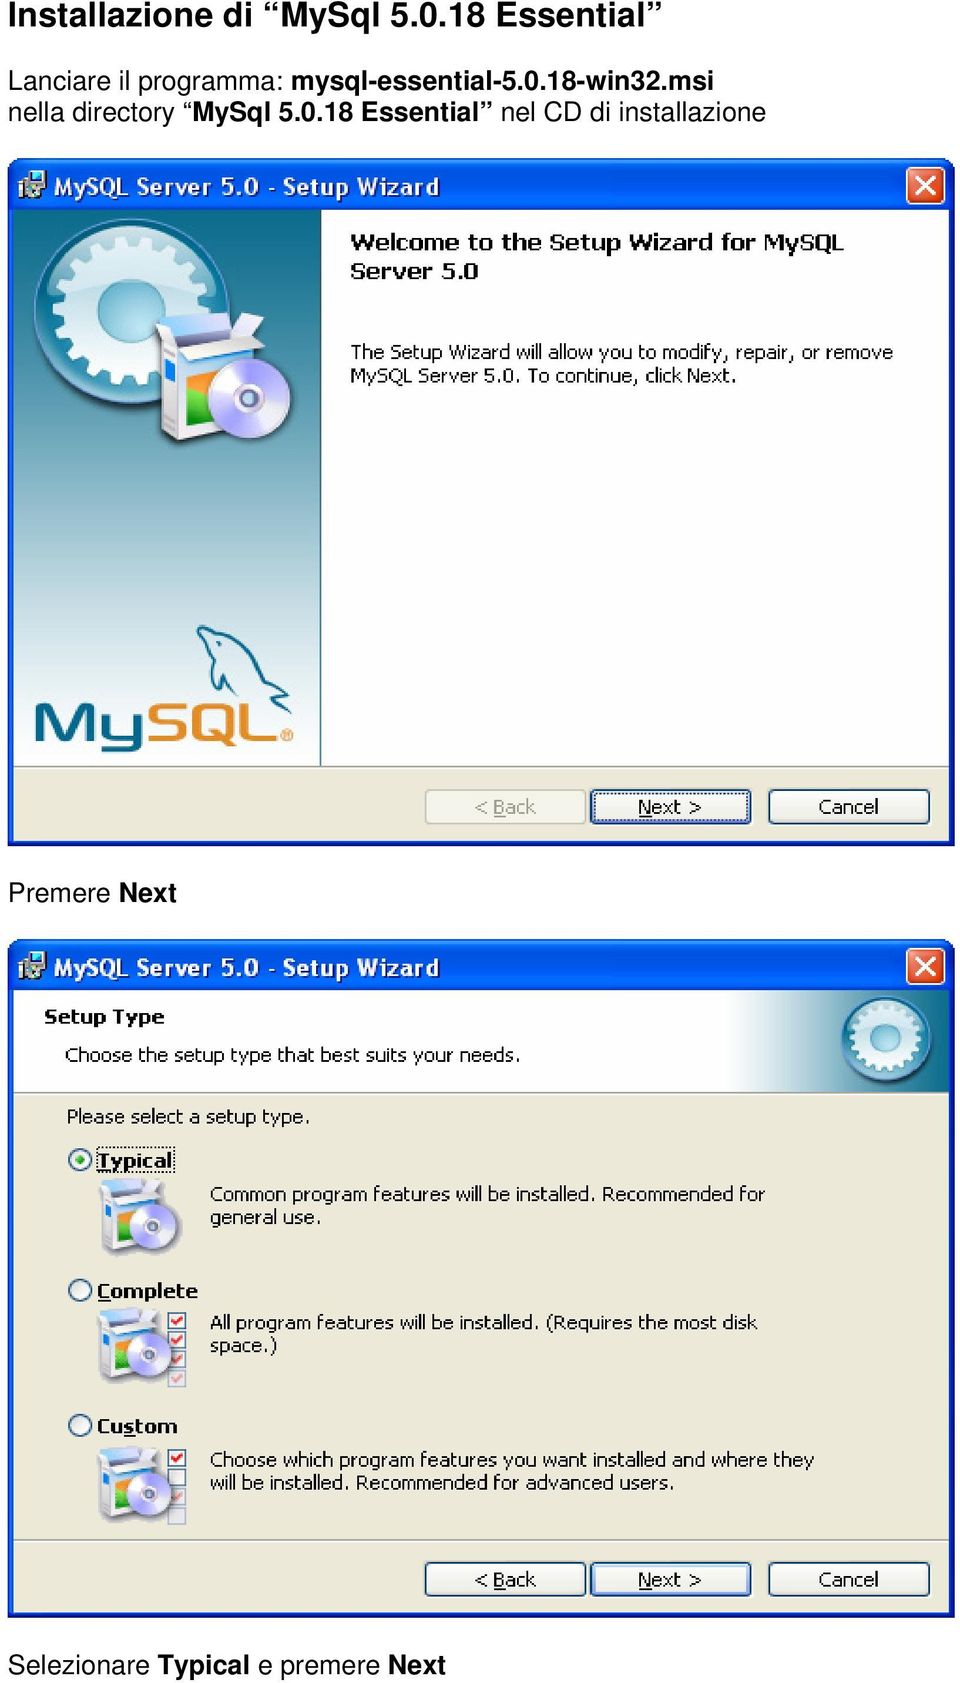 mysql-essential-5.0.18-win32.